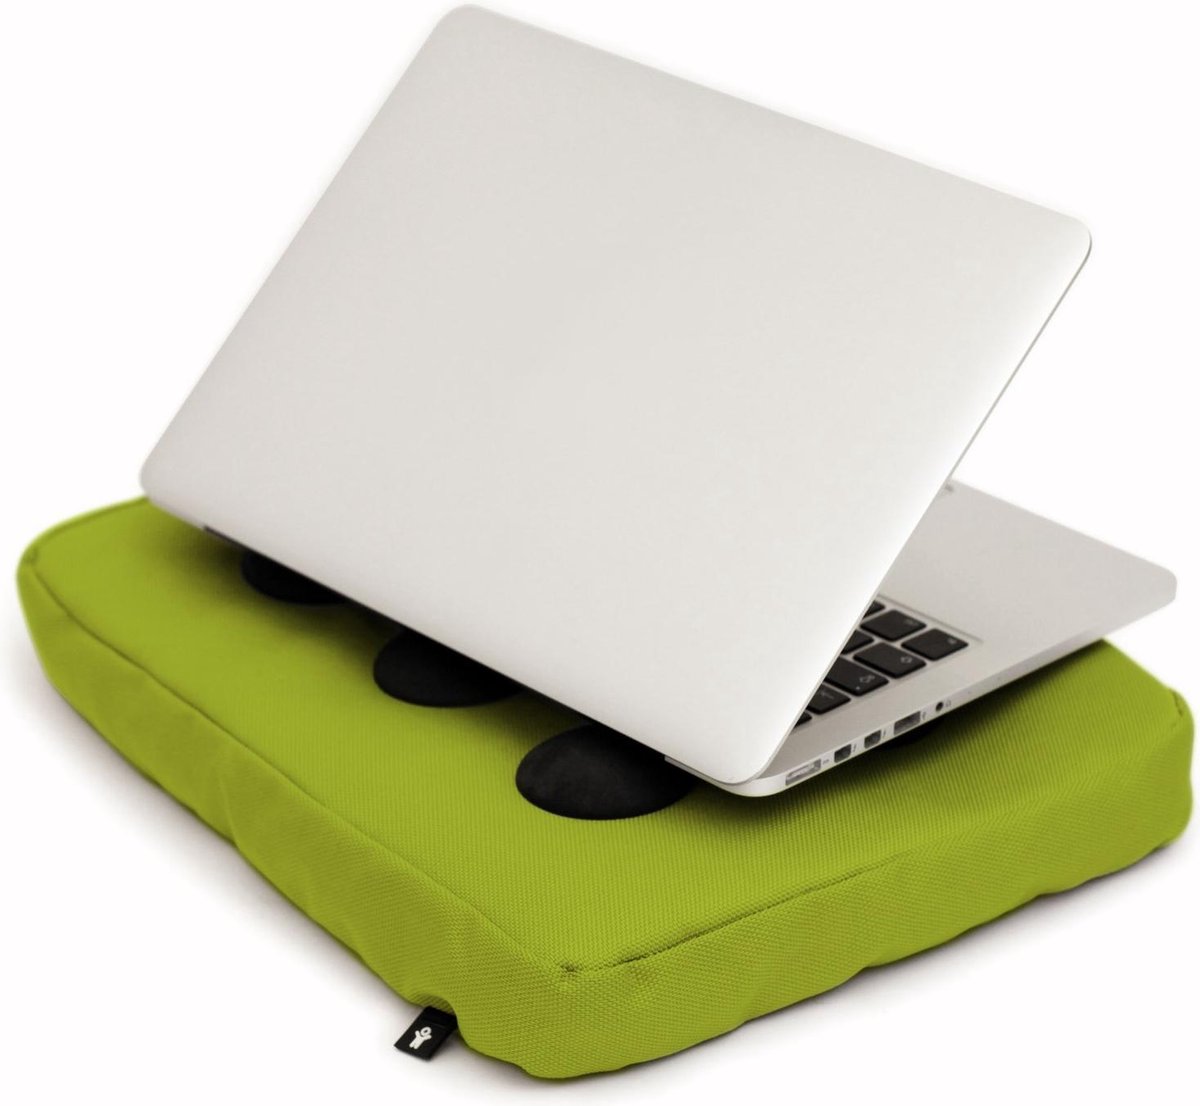 Bosign laptopkussen, laptop kussen, laptop schootkussen, laptop standaard, met siliconen doppen voor warme luchtafvoer - Lime